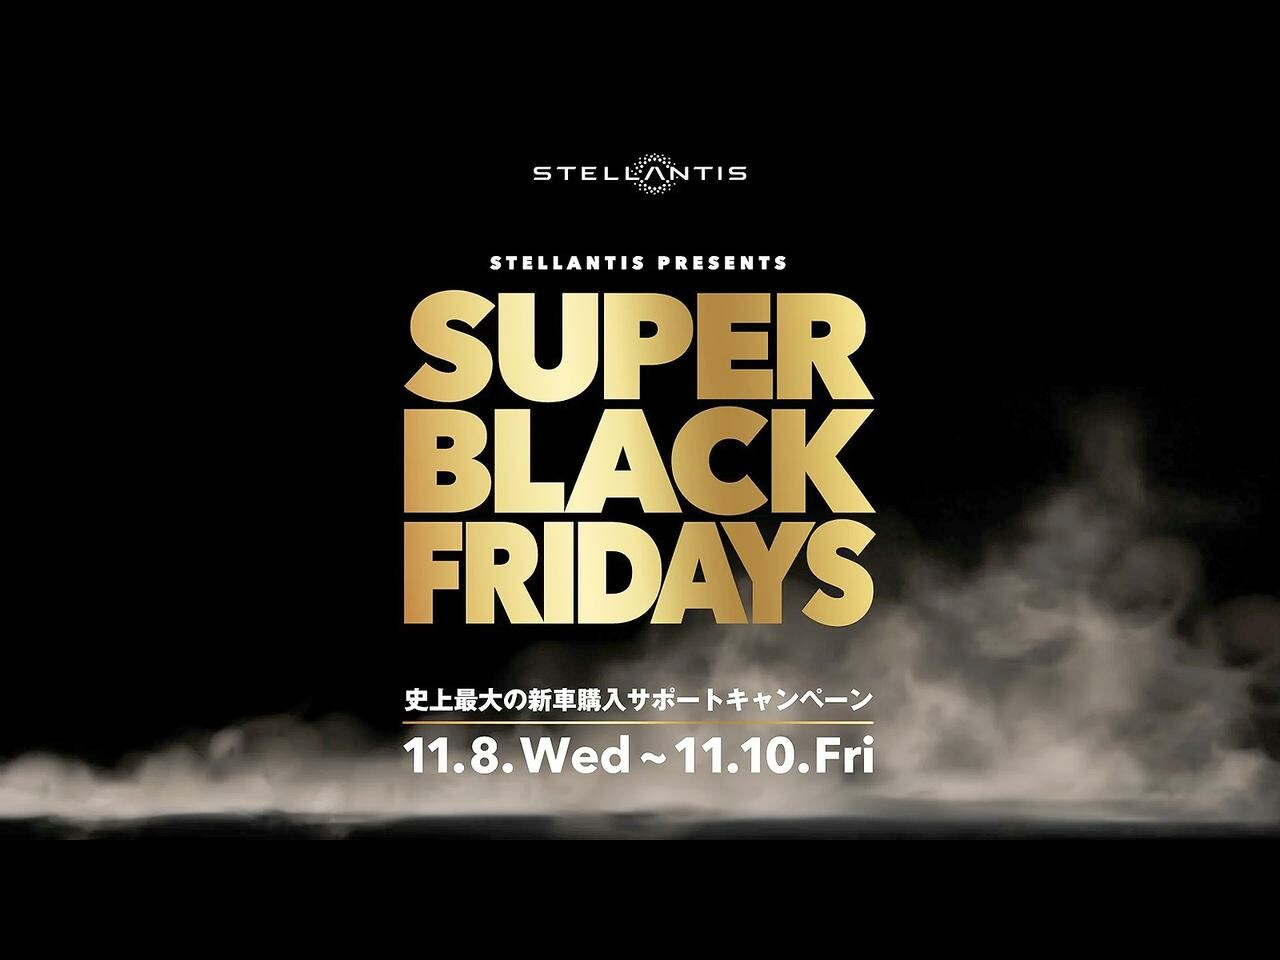 ステランティス ジャパンが特別キャンペーン「スーパー ブラックフライデーズ」の第一弾を実施！